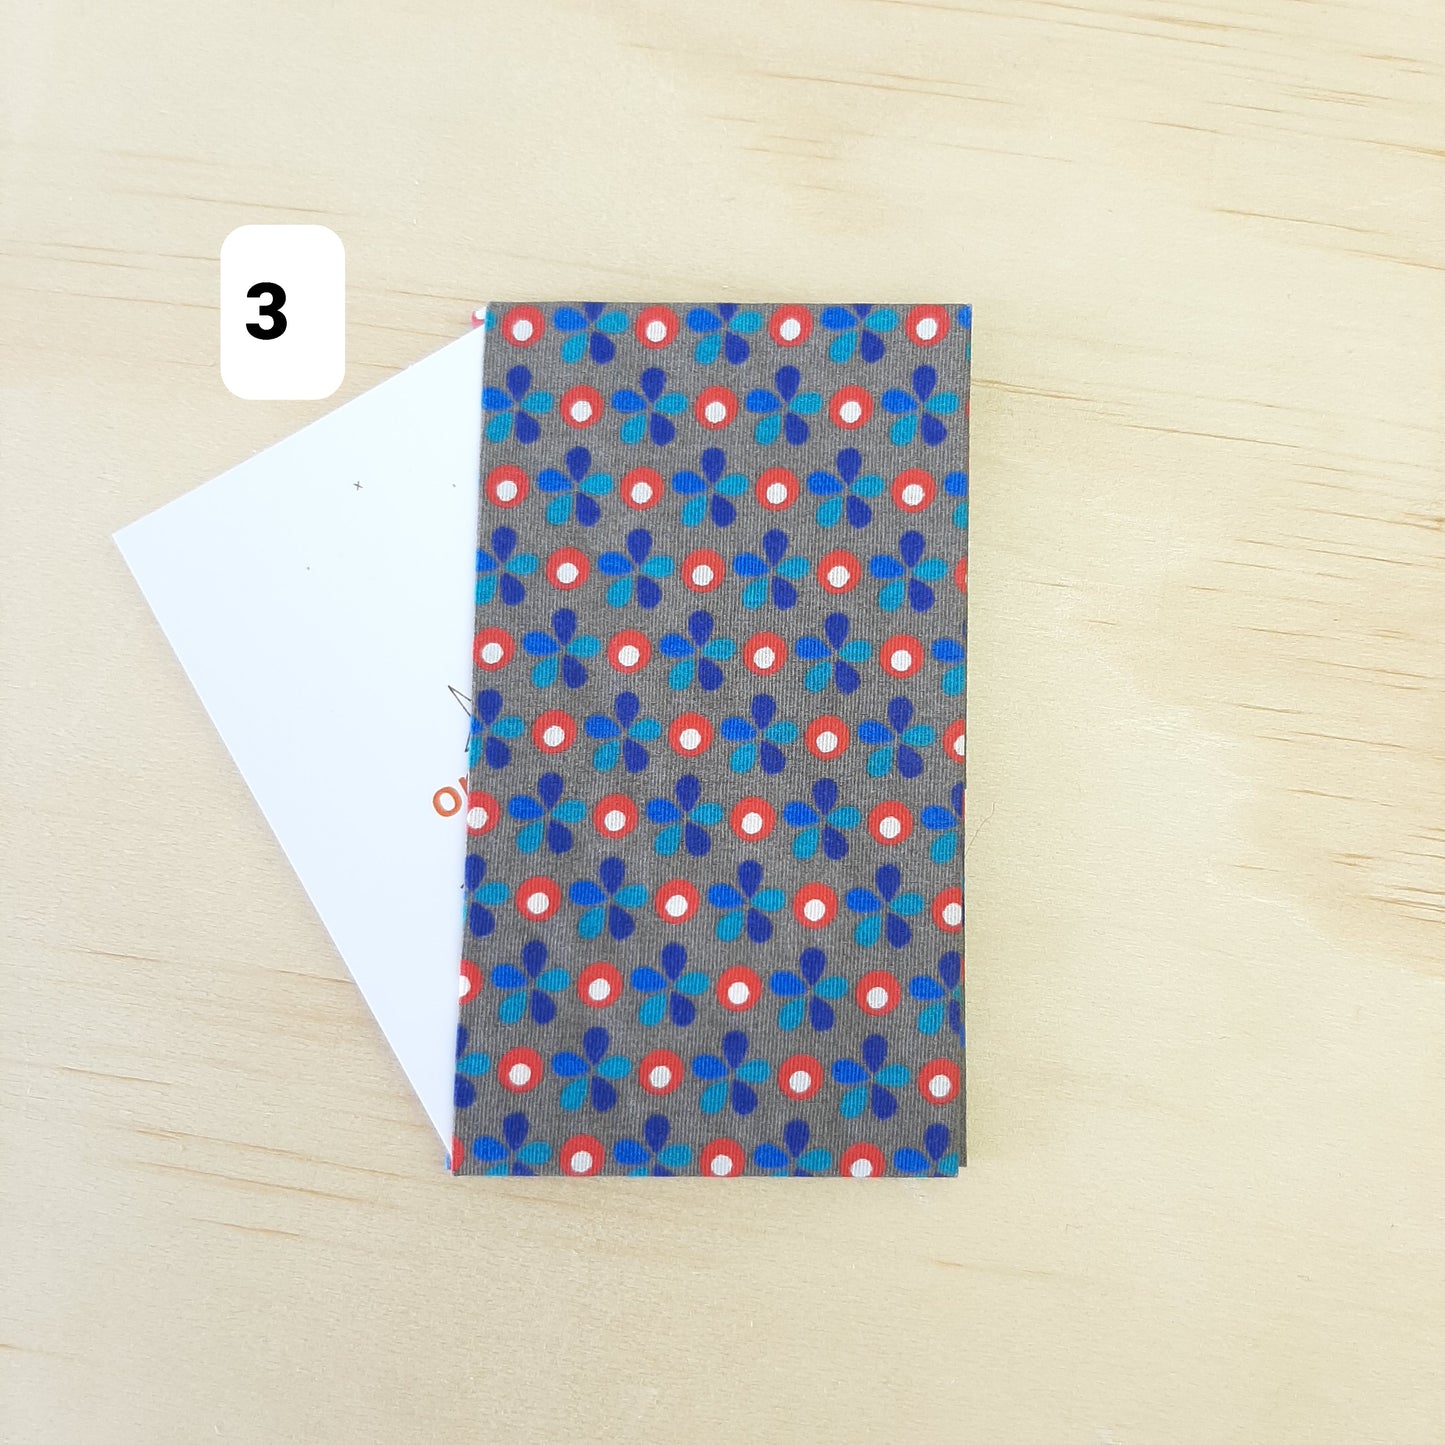 Ce porte-carte en tissu bleu/gris élégant, pratique et durable est le cadeau idéal pour homme et femme | C'est le Printemps !